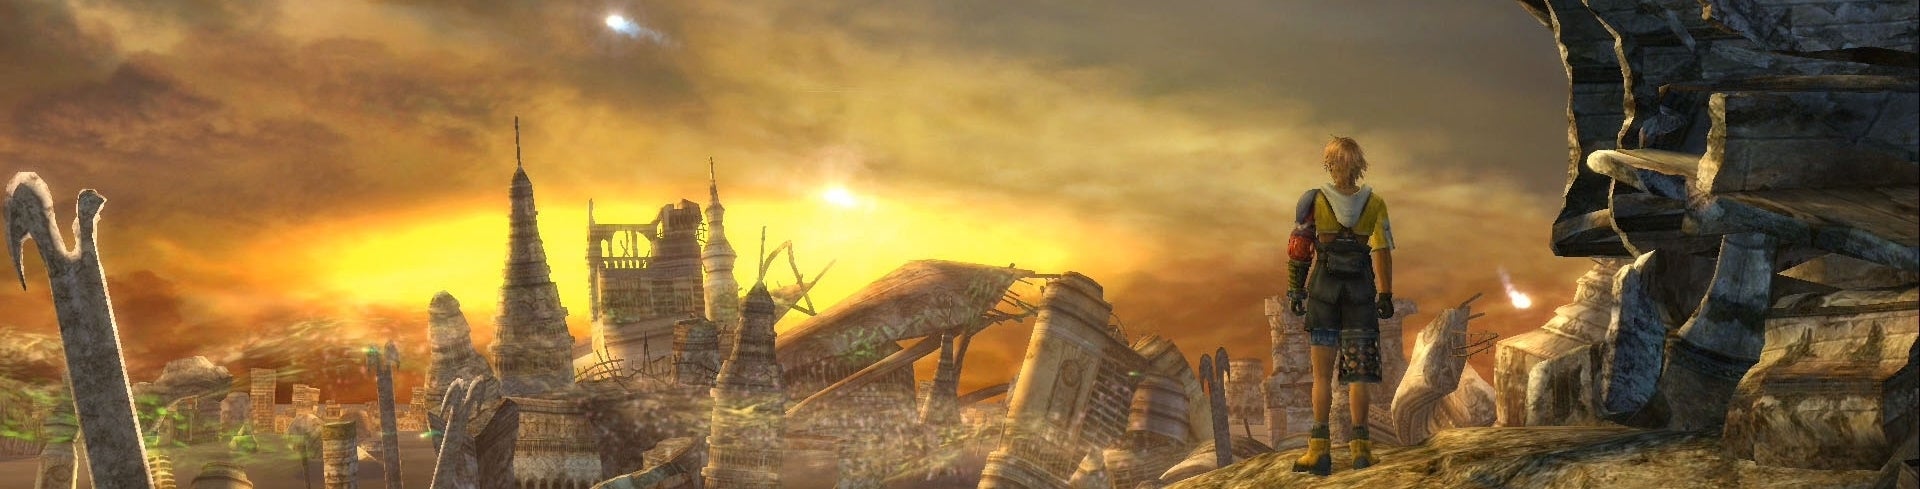 Afbeeldingen van Final Fantasy X & X-2 HD bevestigd voor PS3 en PS Vita [UPDATE]